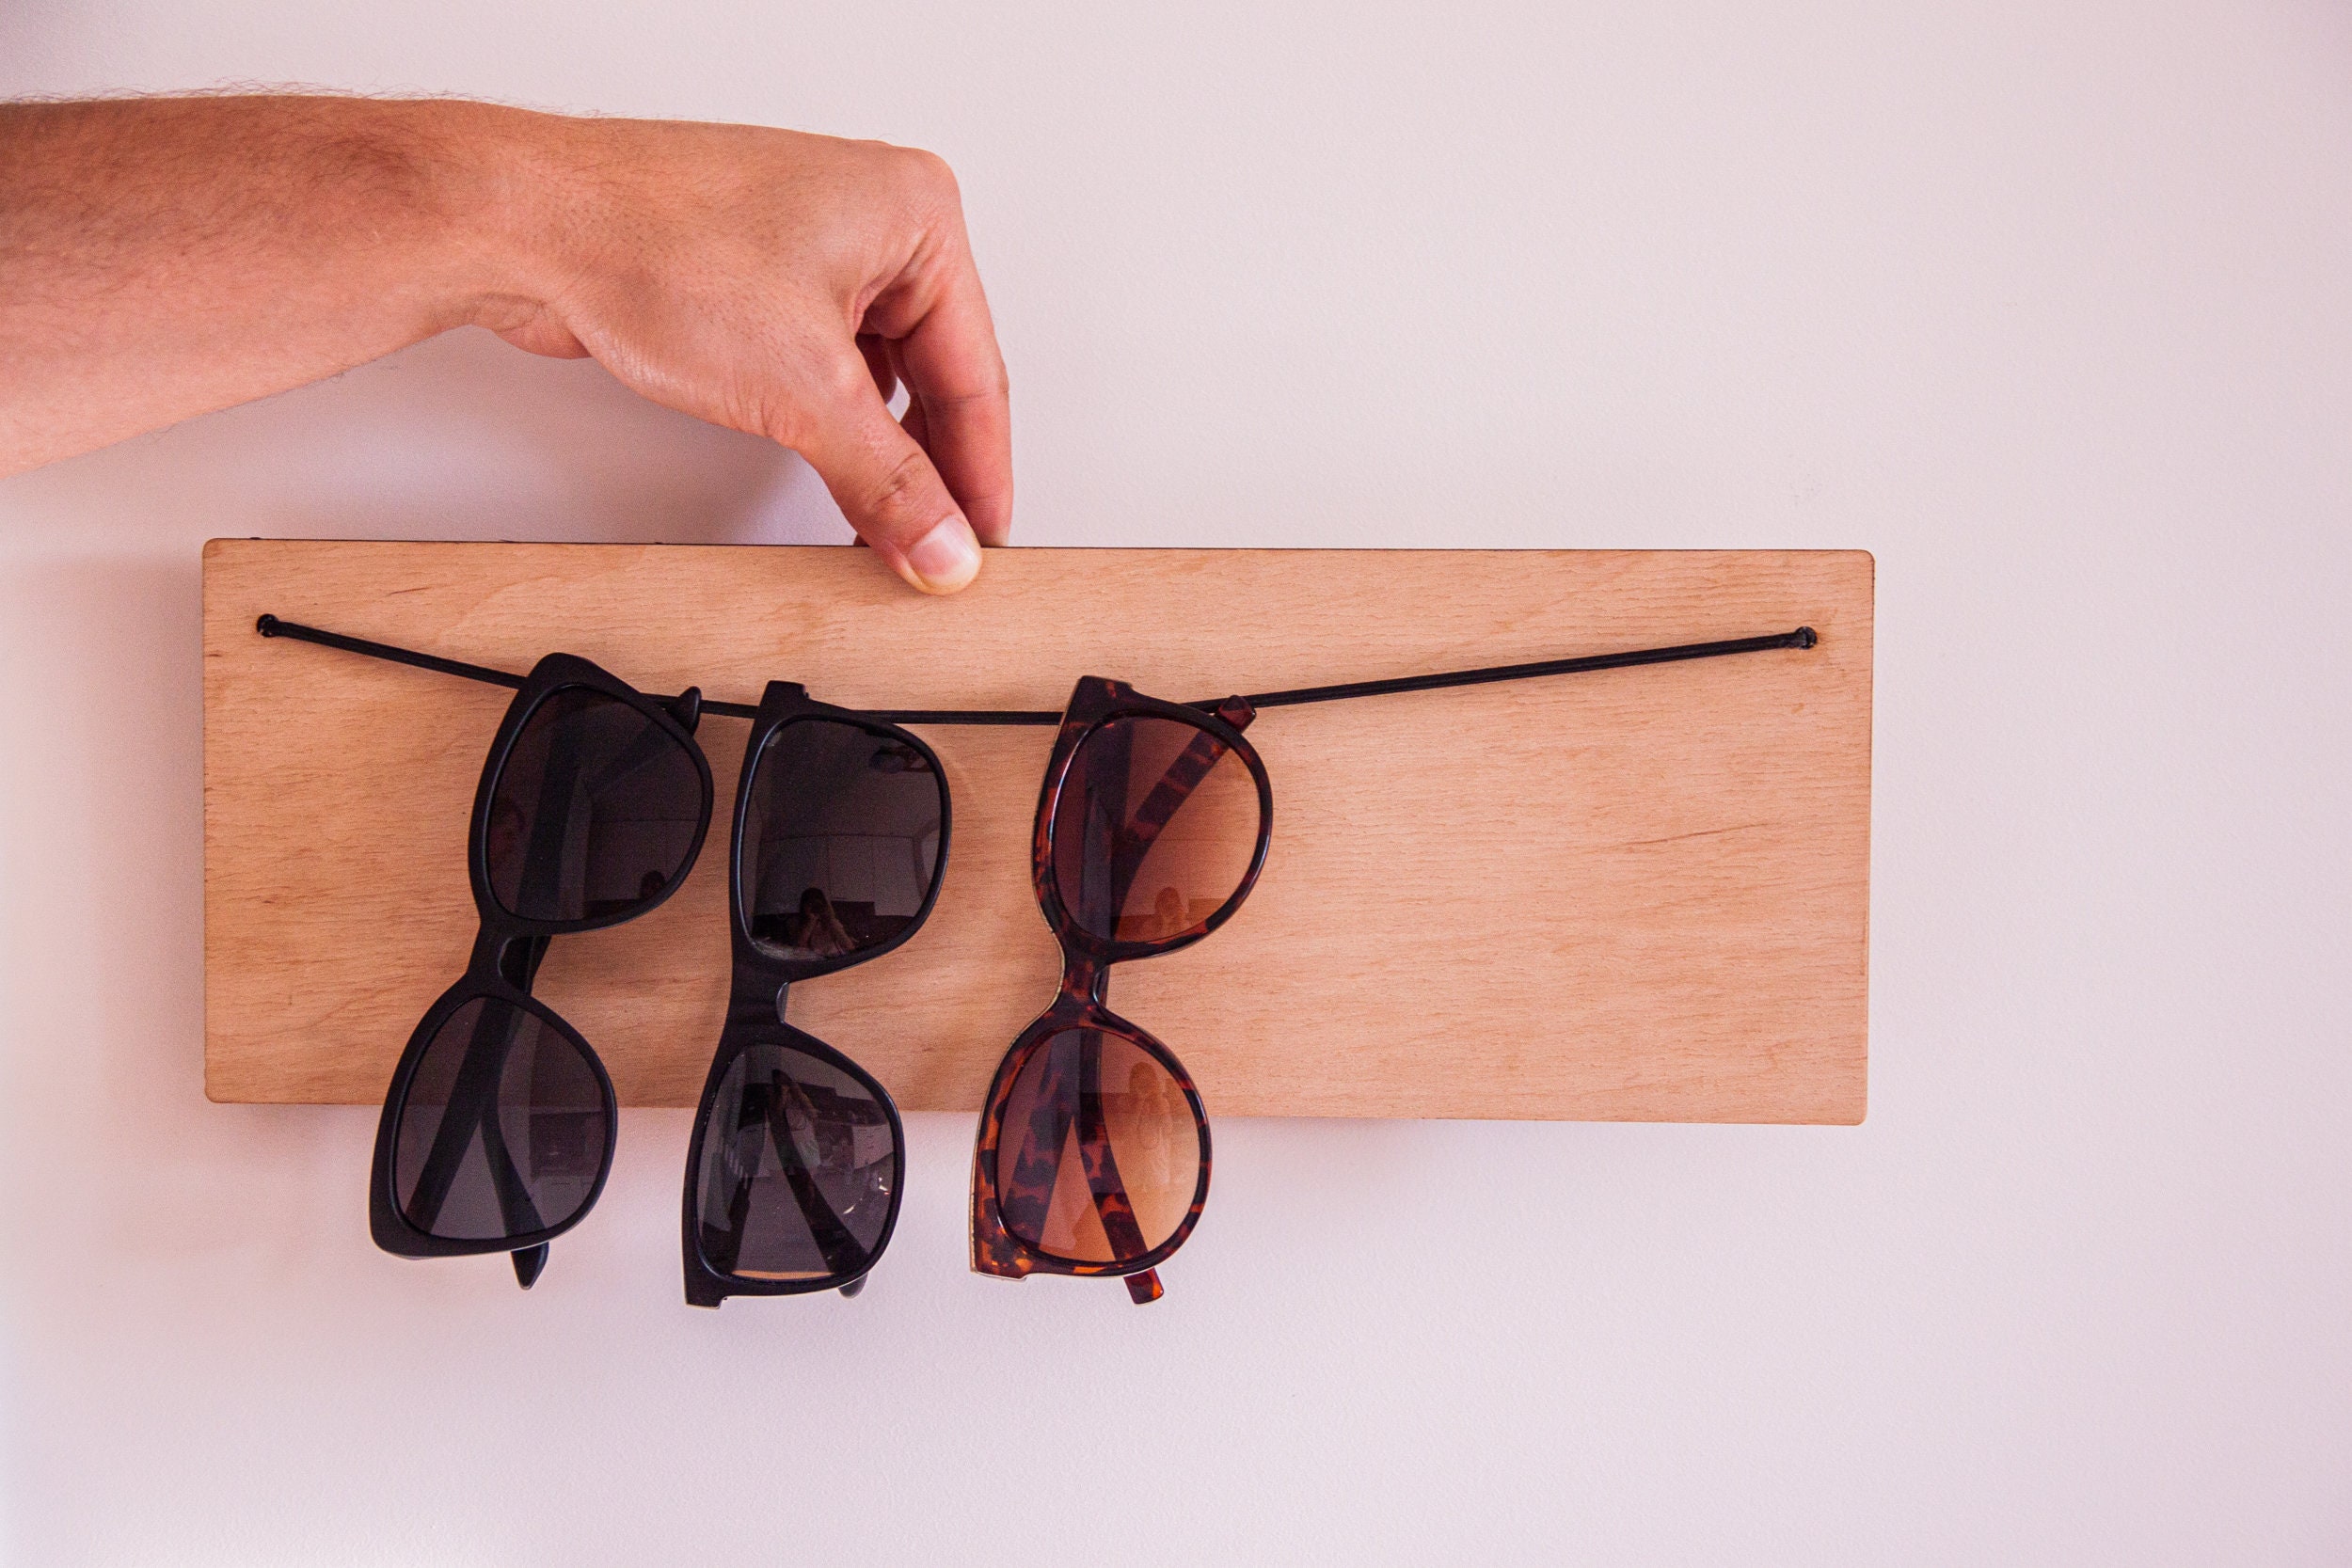 Brillenhalter Wand,Sonnenbrillenhalter Wand,Sonnenbrillenhalter  Holz,Sonnenbrillenhalter Holz,Sonnenbrillenständer Holz,Brillenständer -   Schweiz